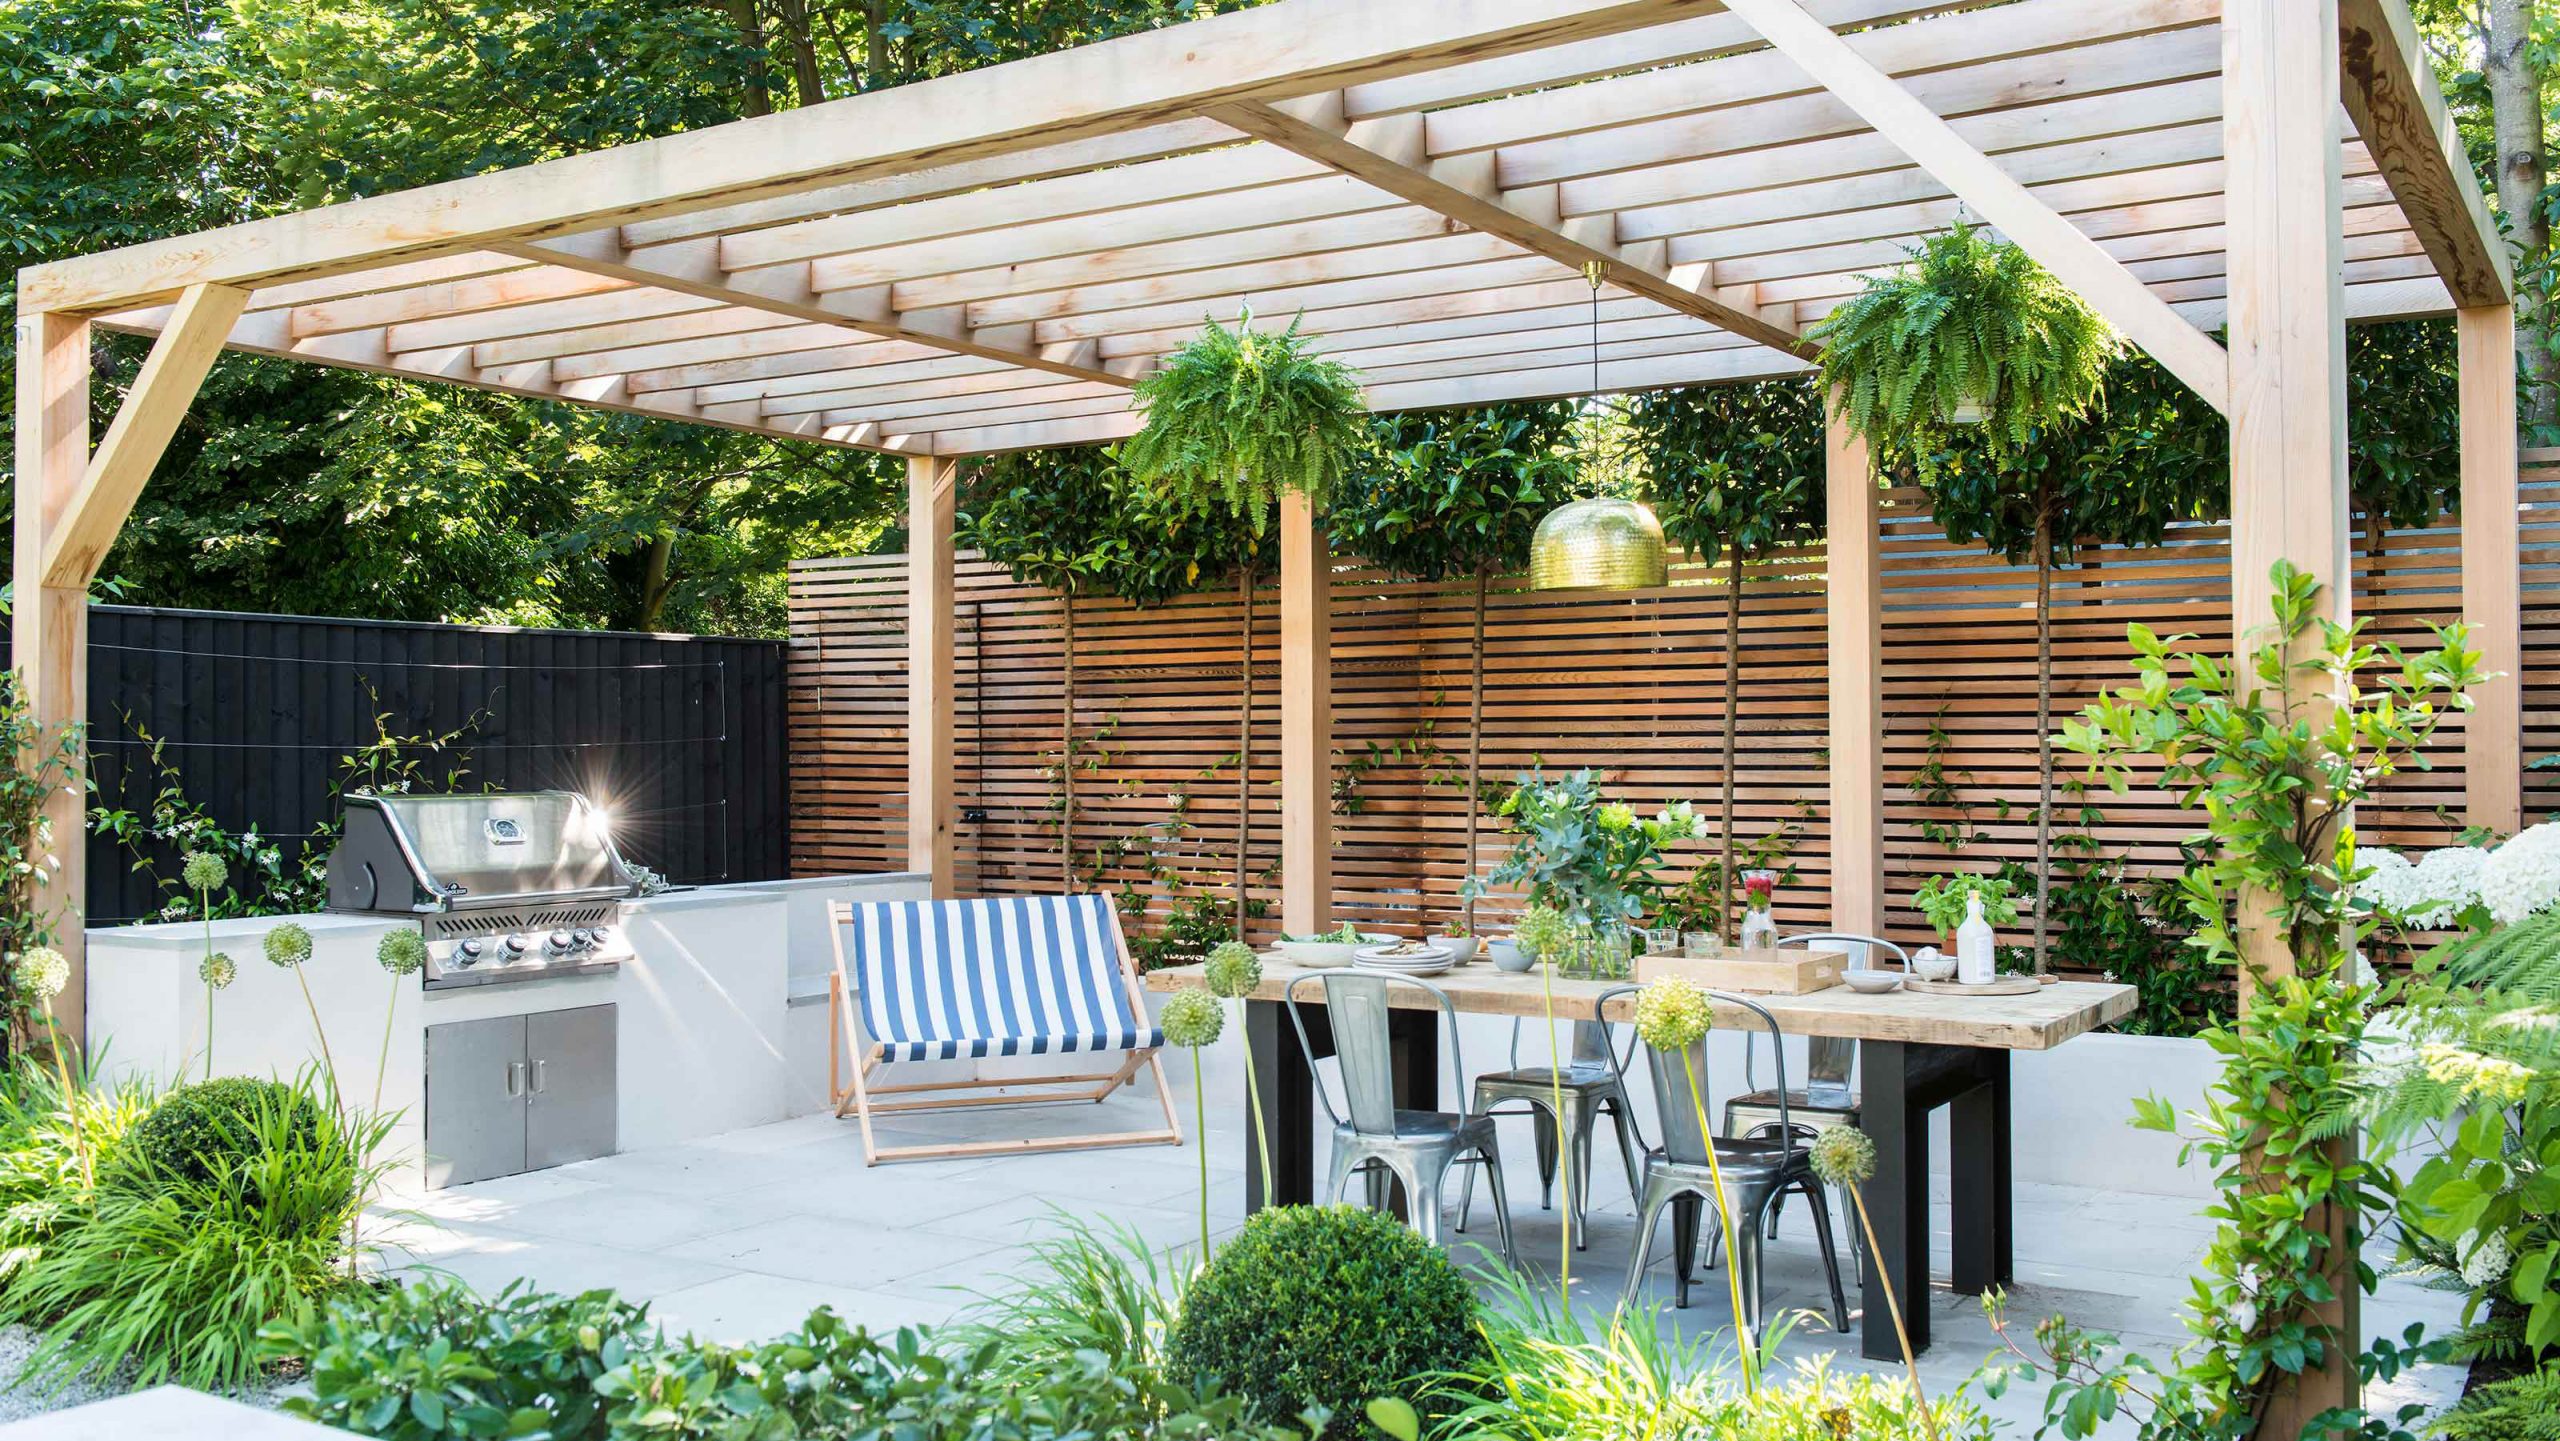 Summer garden idea with a pergola patio